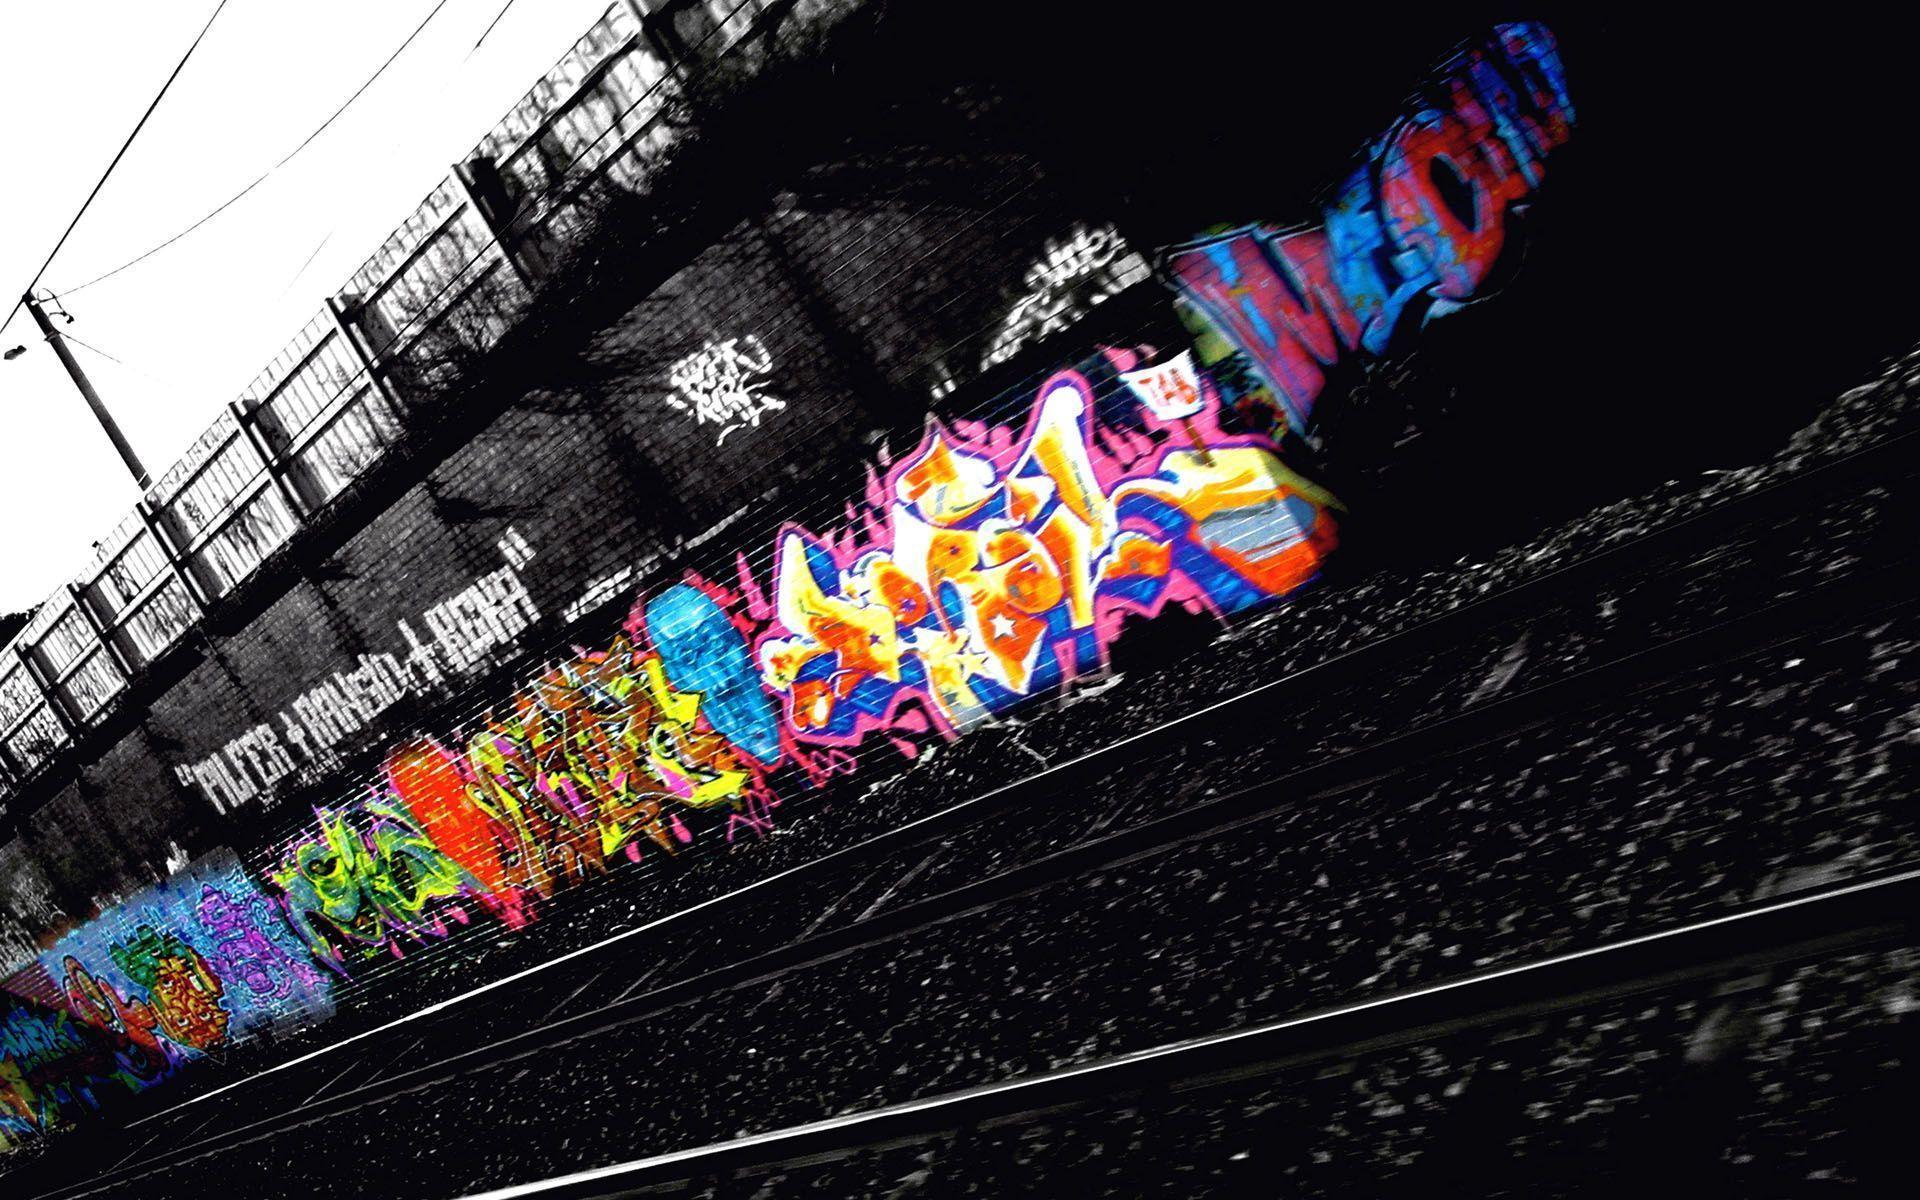 Graffiti Wallpaper Free Download, Graffiti Picture